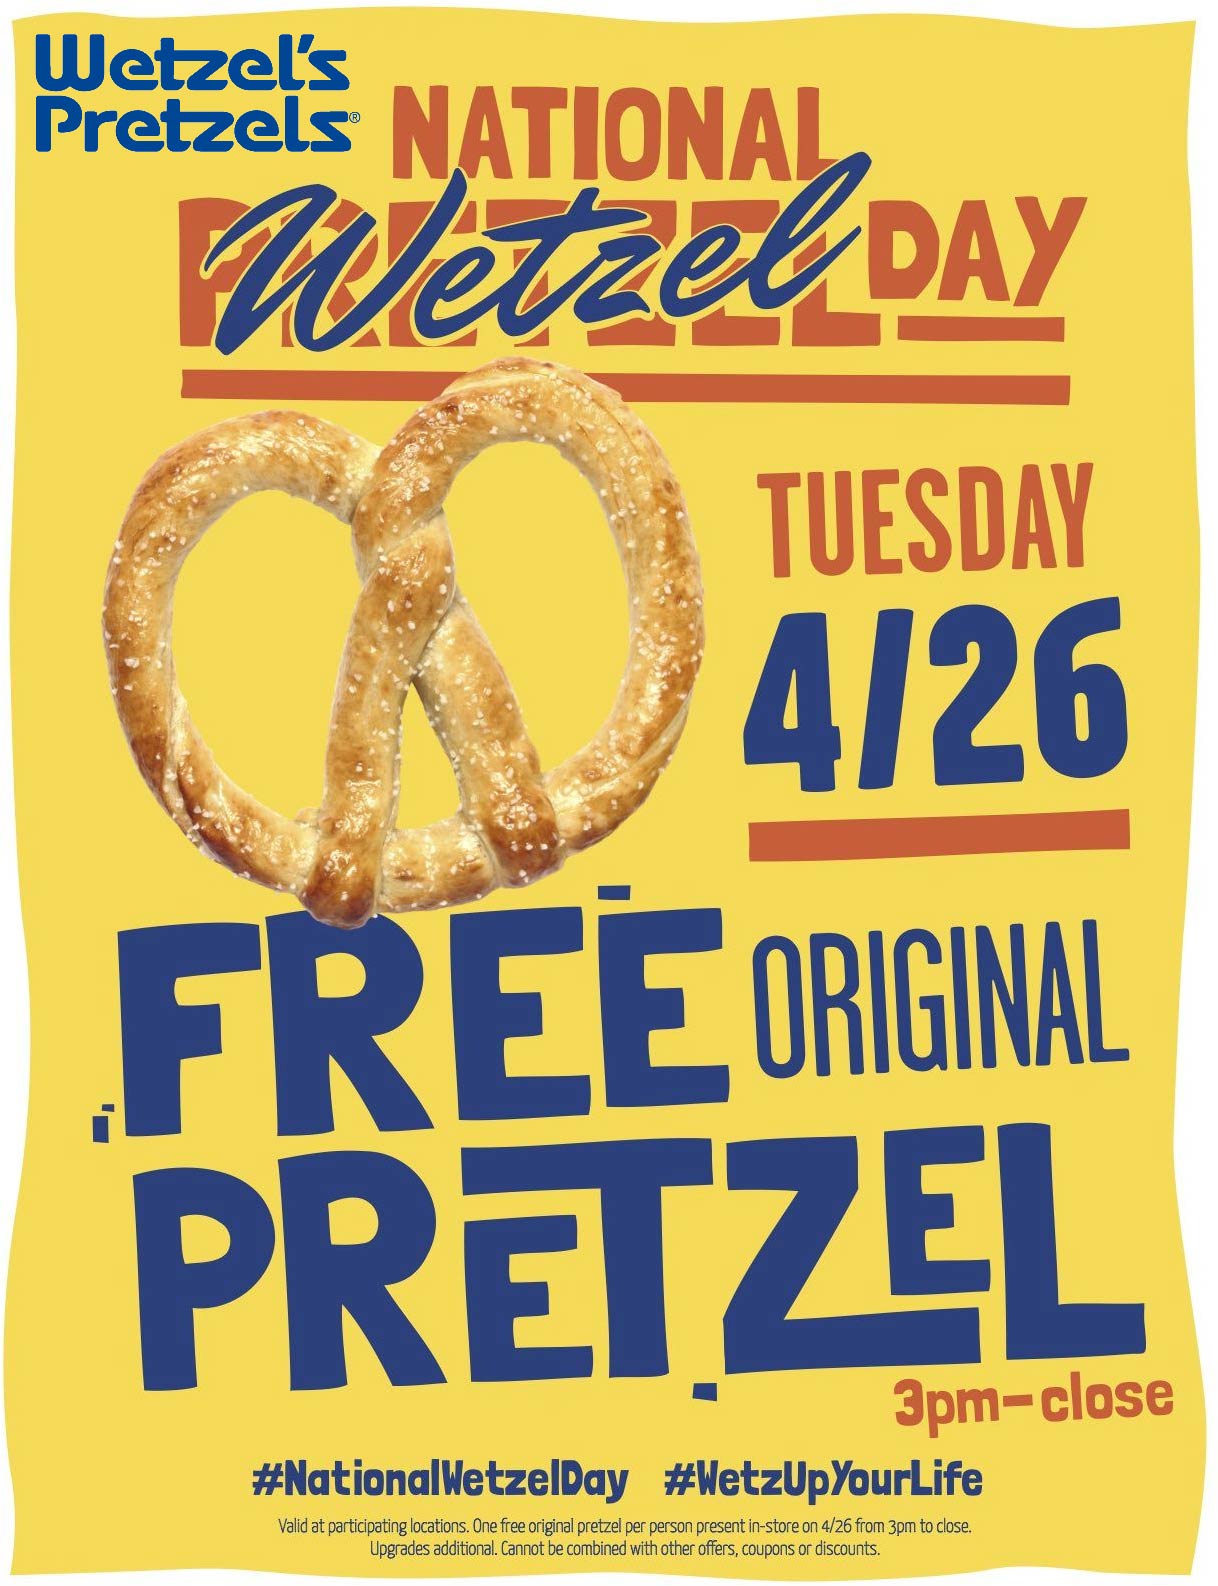 Wetzels Pretzels stores Coupon  Free pretzel the 26th at Wetzels Pretzels #wetzelspretzels 